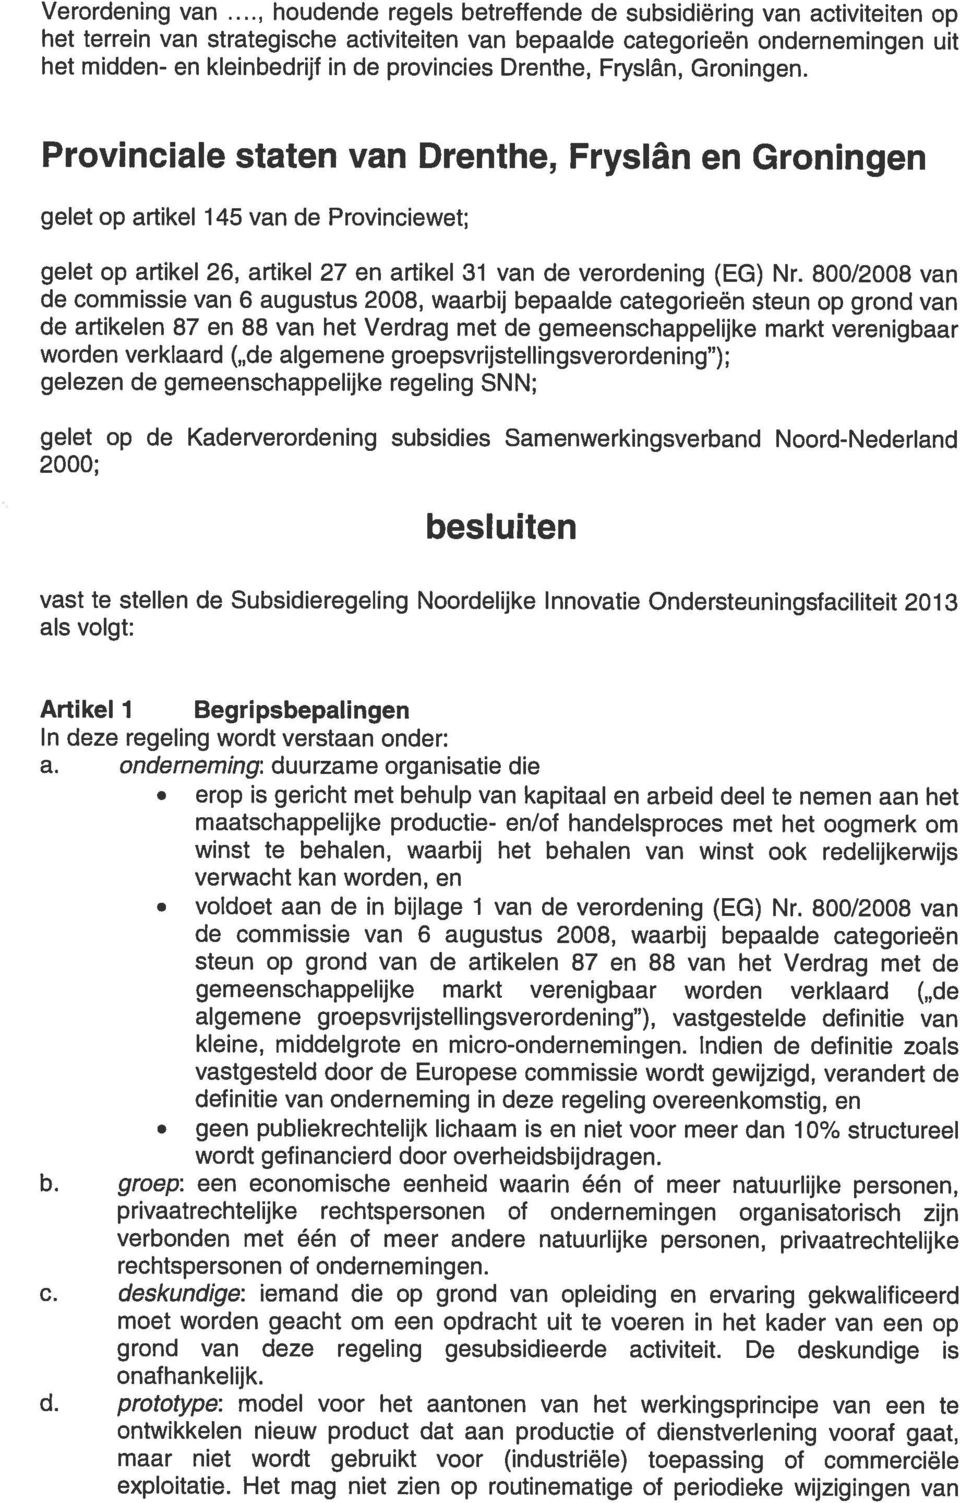 Drenthe, Fryslân, Groningen. Provinciale staten van Drenthe, Fryslân en Groningen gelet op artikel 145 van de Provinciewet; gelet op artikel 26, artikel 27 en artikel 31 van de verordening (EG) Nr.